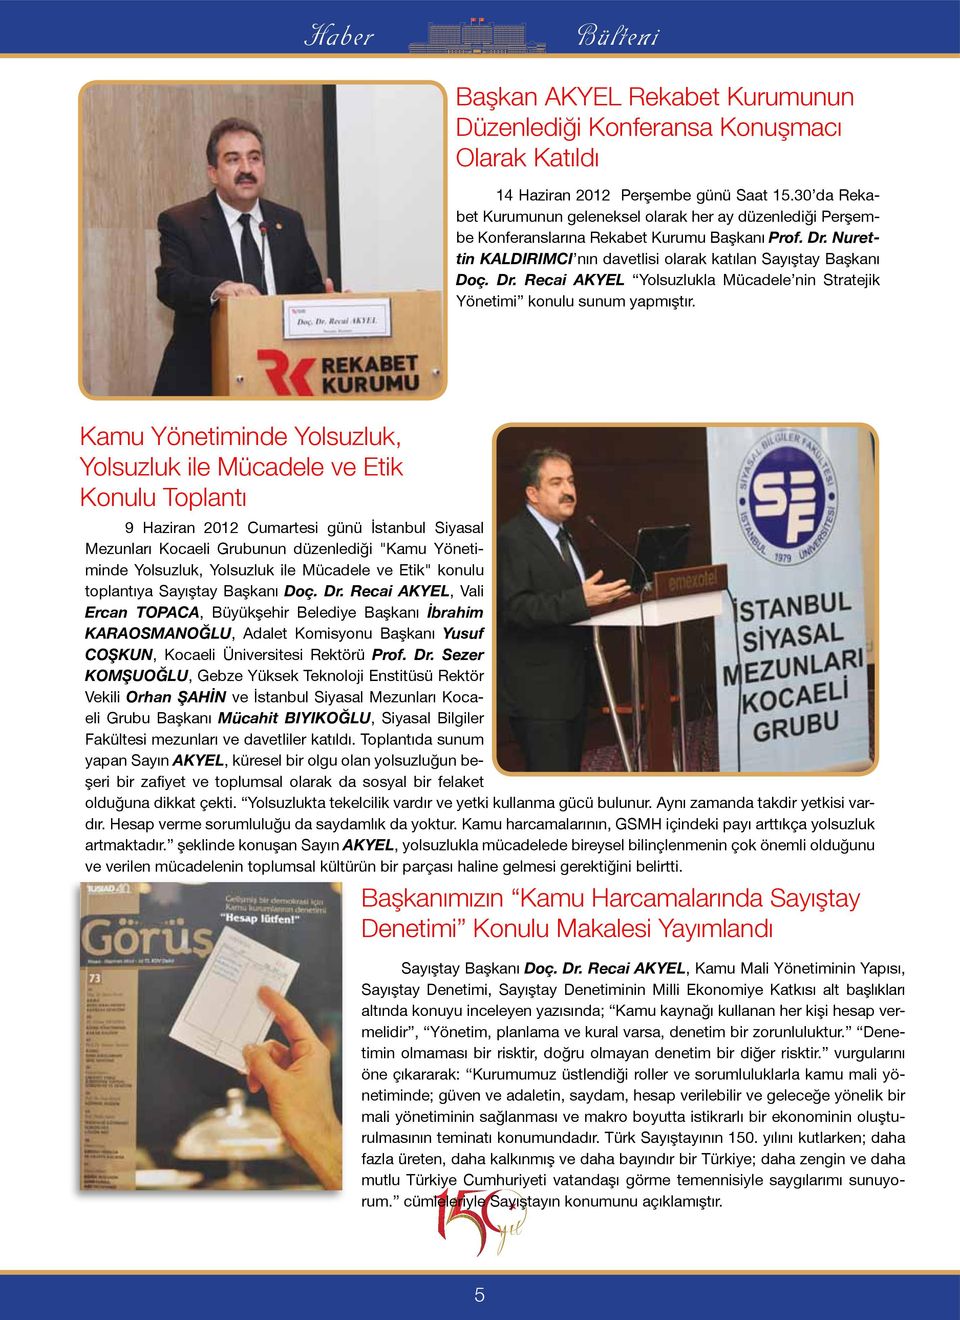 Kamu Yönetiminde Yolsuzluk, Yolsuzluk ile Mücadele ve Etik Konulu Toplantı 9 Haziran 2012 Cumartesi günü İstanbul Siyasal Mezunları Kocaeli Grubunun düzenlediği "Kamu Yönetiminde Yolsuzluk, Yolsuzluk